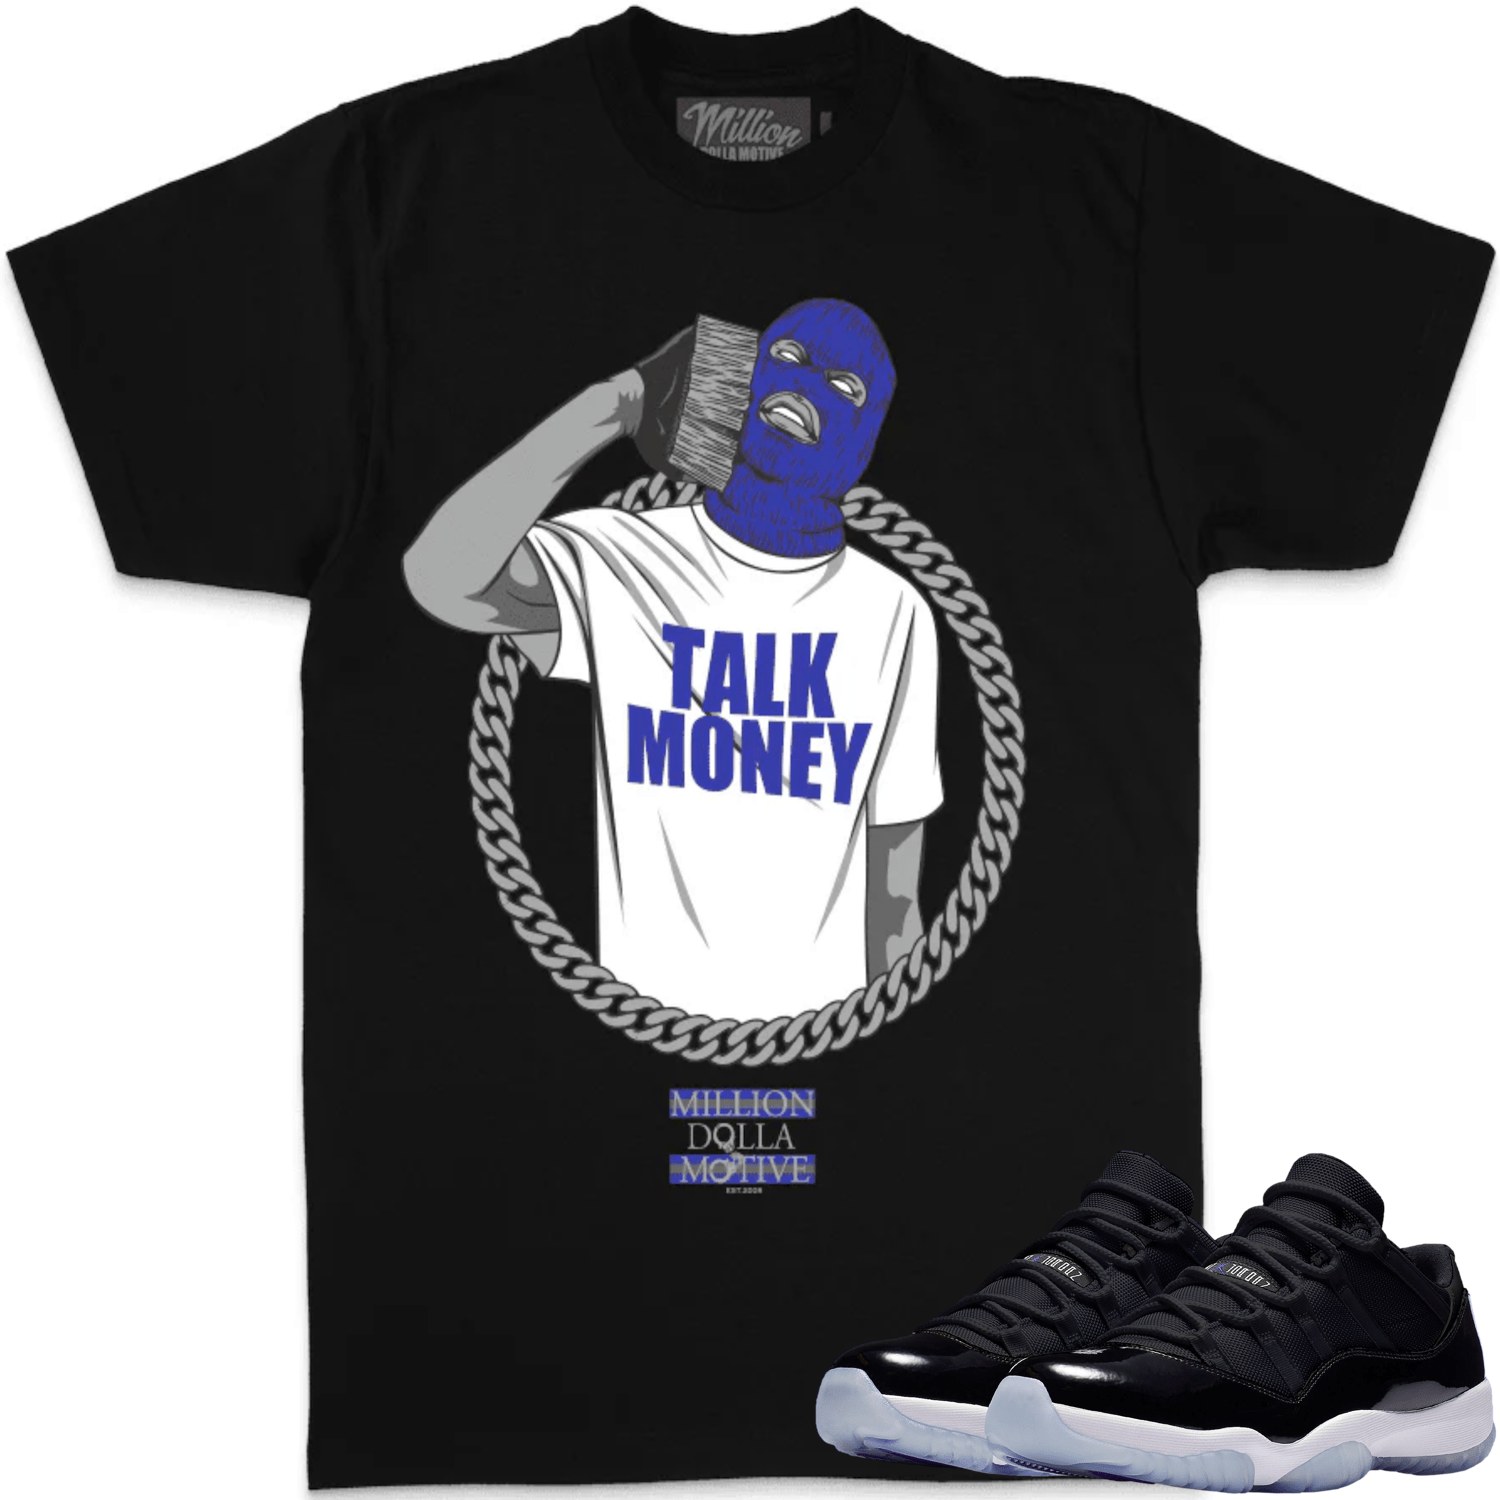 Space Jam 11s Shirt - Jordan Retro 11 Low Sneaker Tees - Money Phone